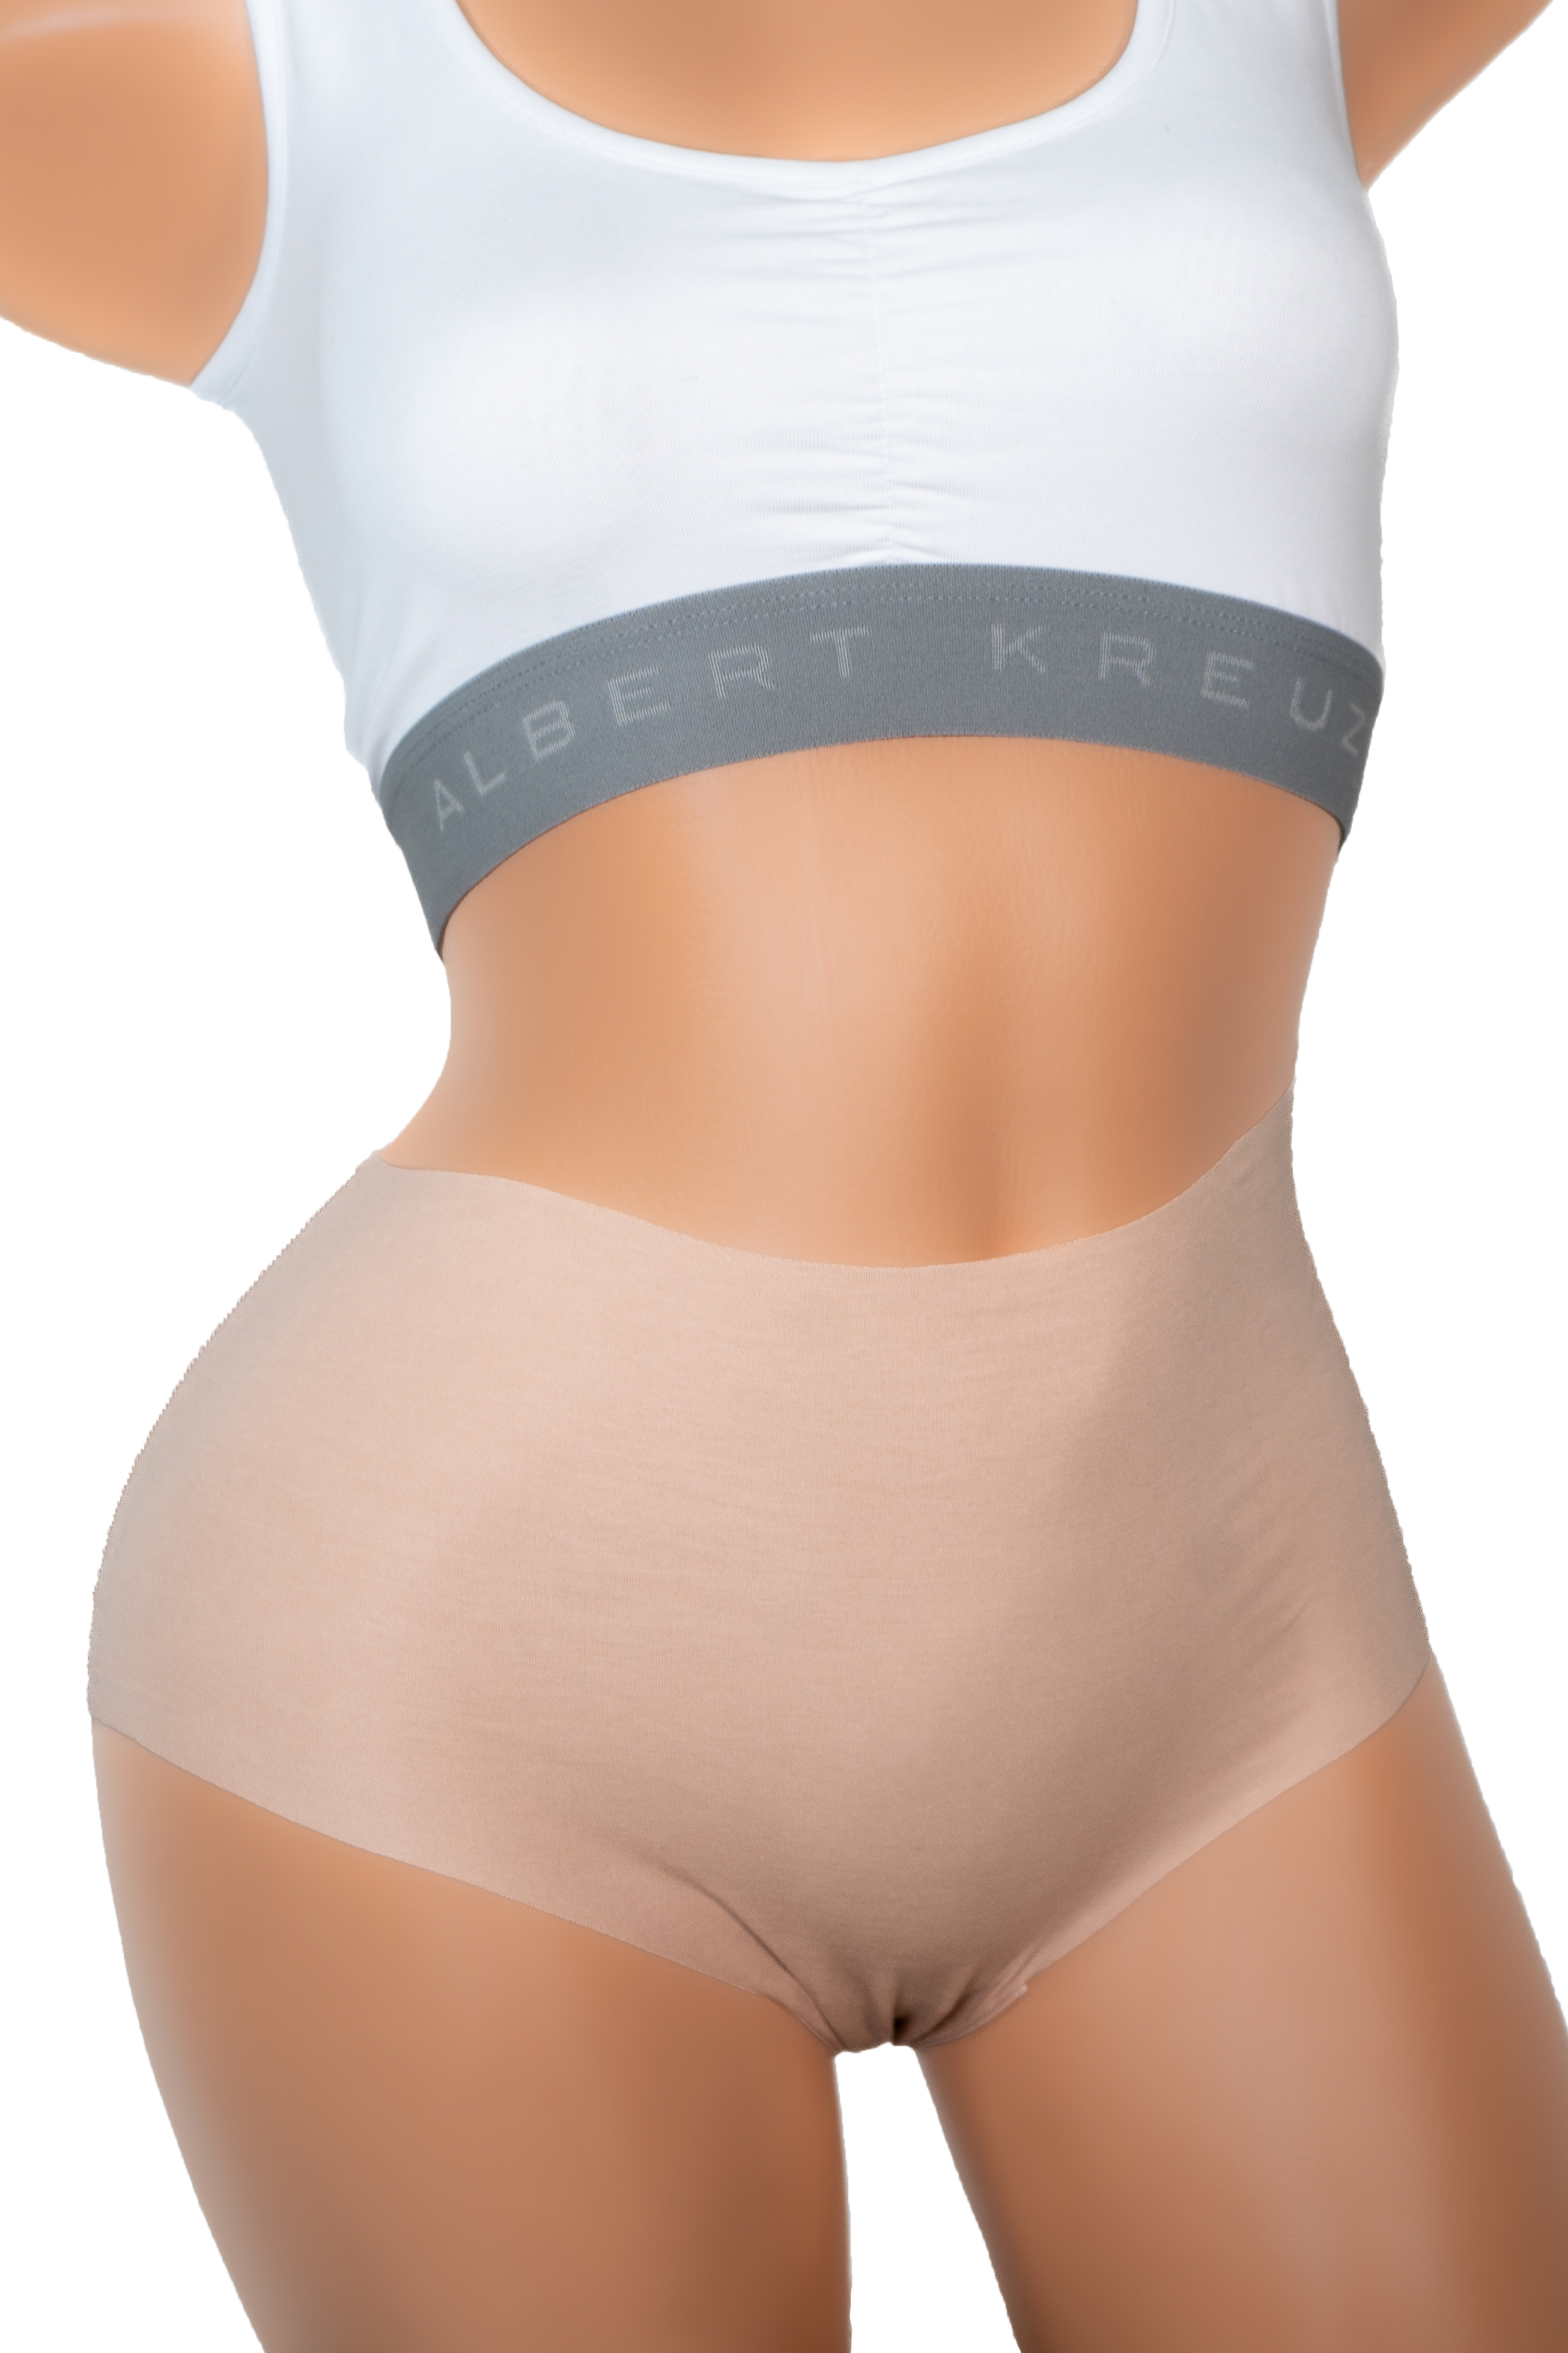 3 Women's Laser Cut Seamless Brief High Waist Panties Underwear Beige Nude  M L